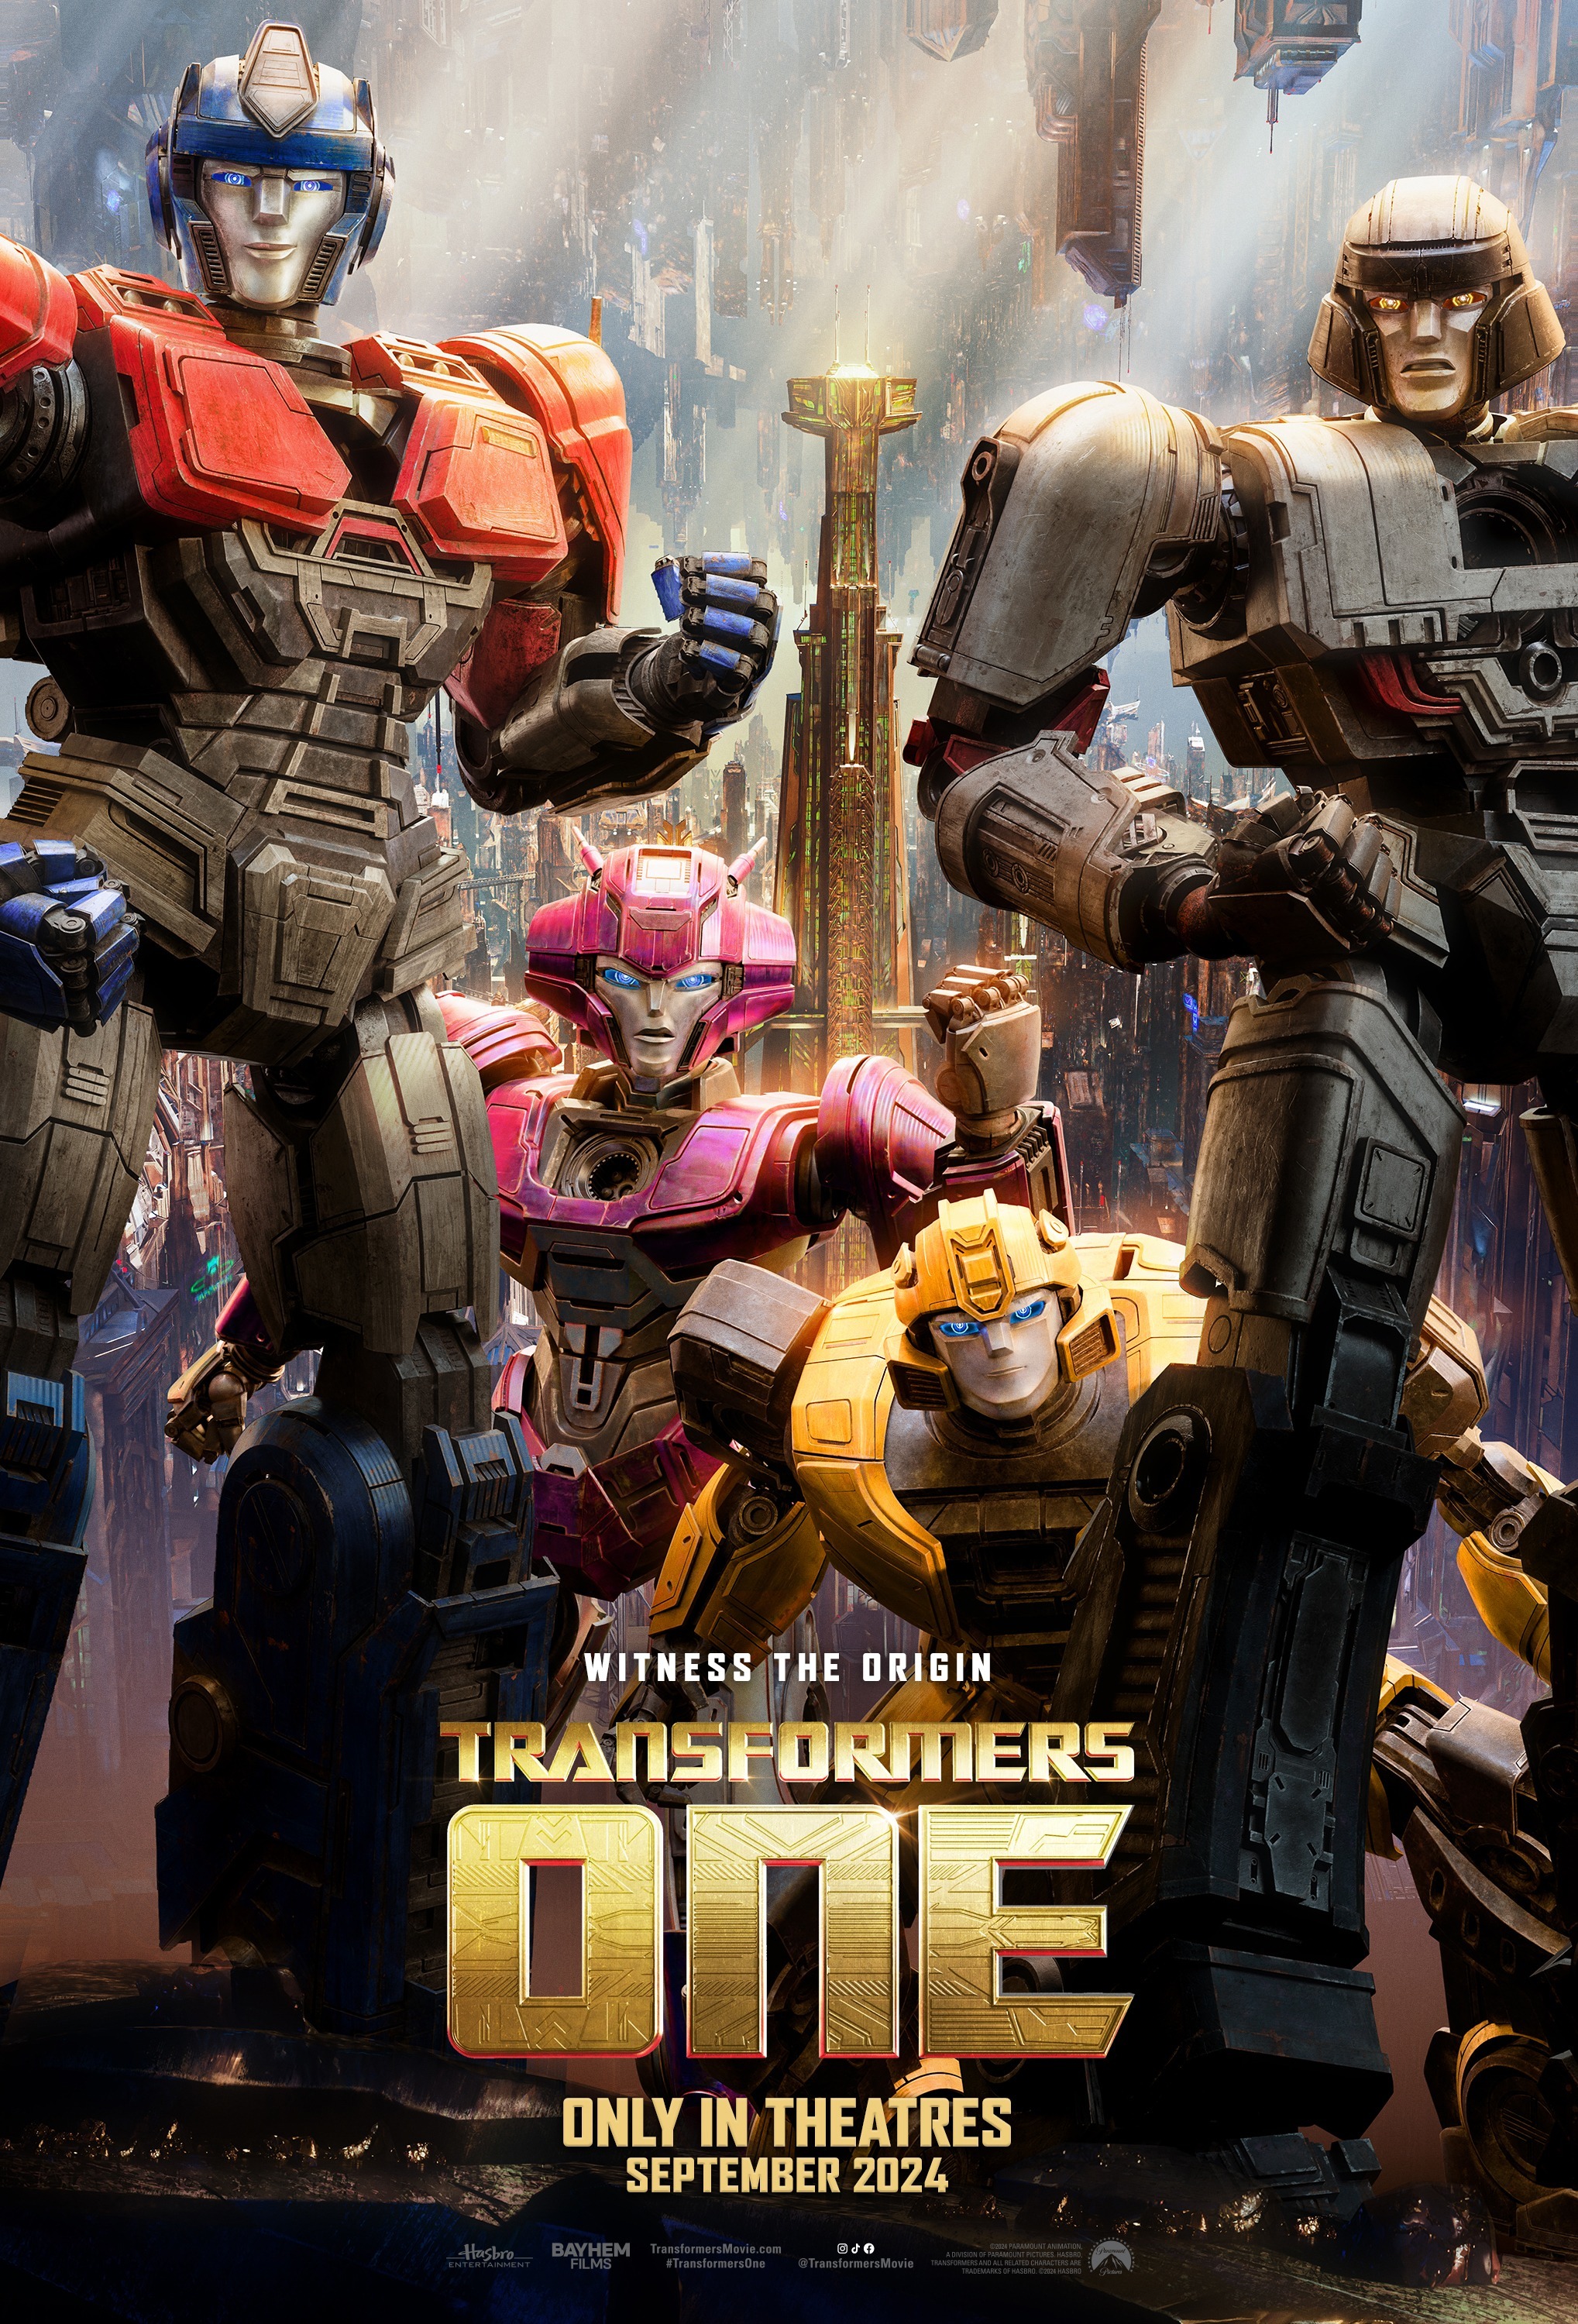 Transformers One, la precuela de la serie de animación, se estrena en cines el 20 de septiembre